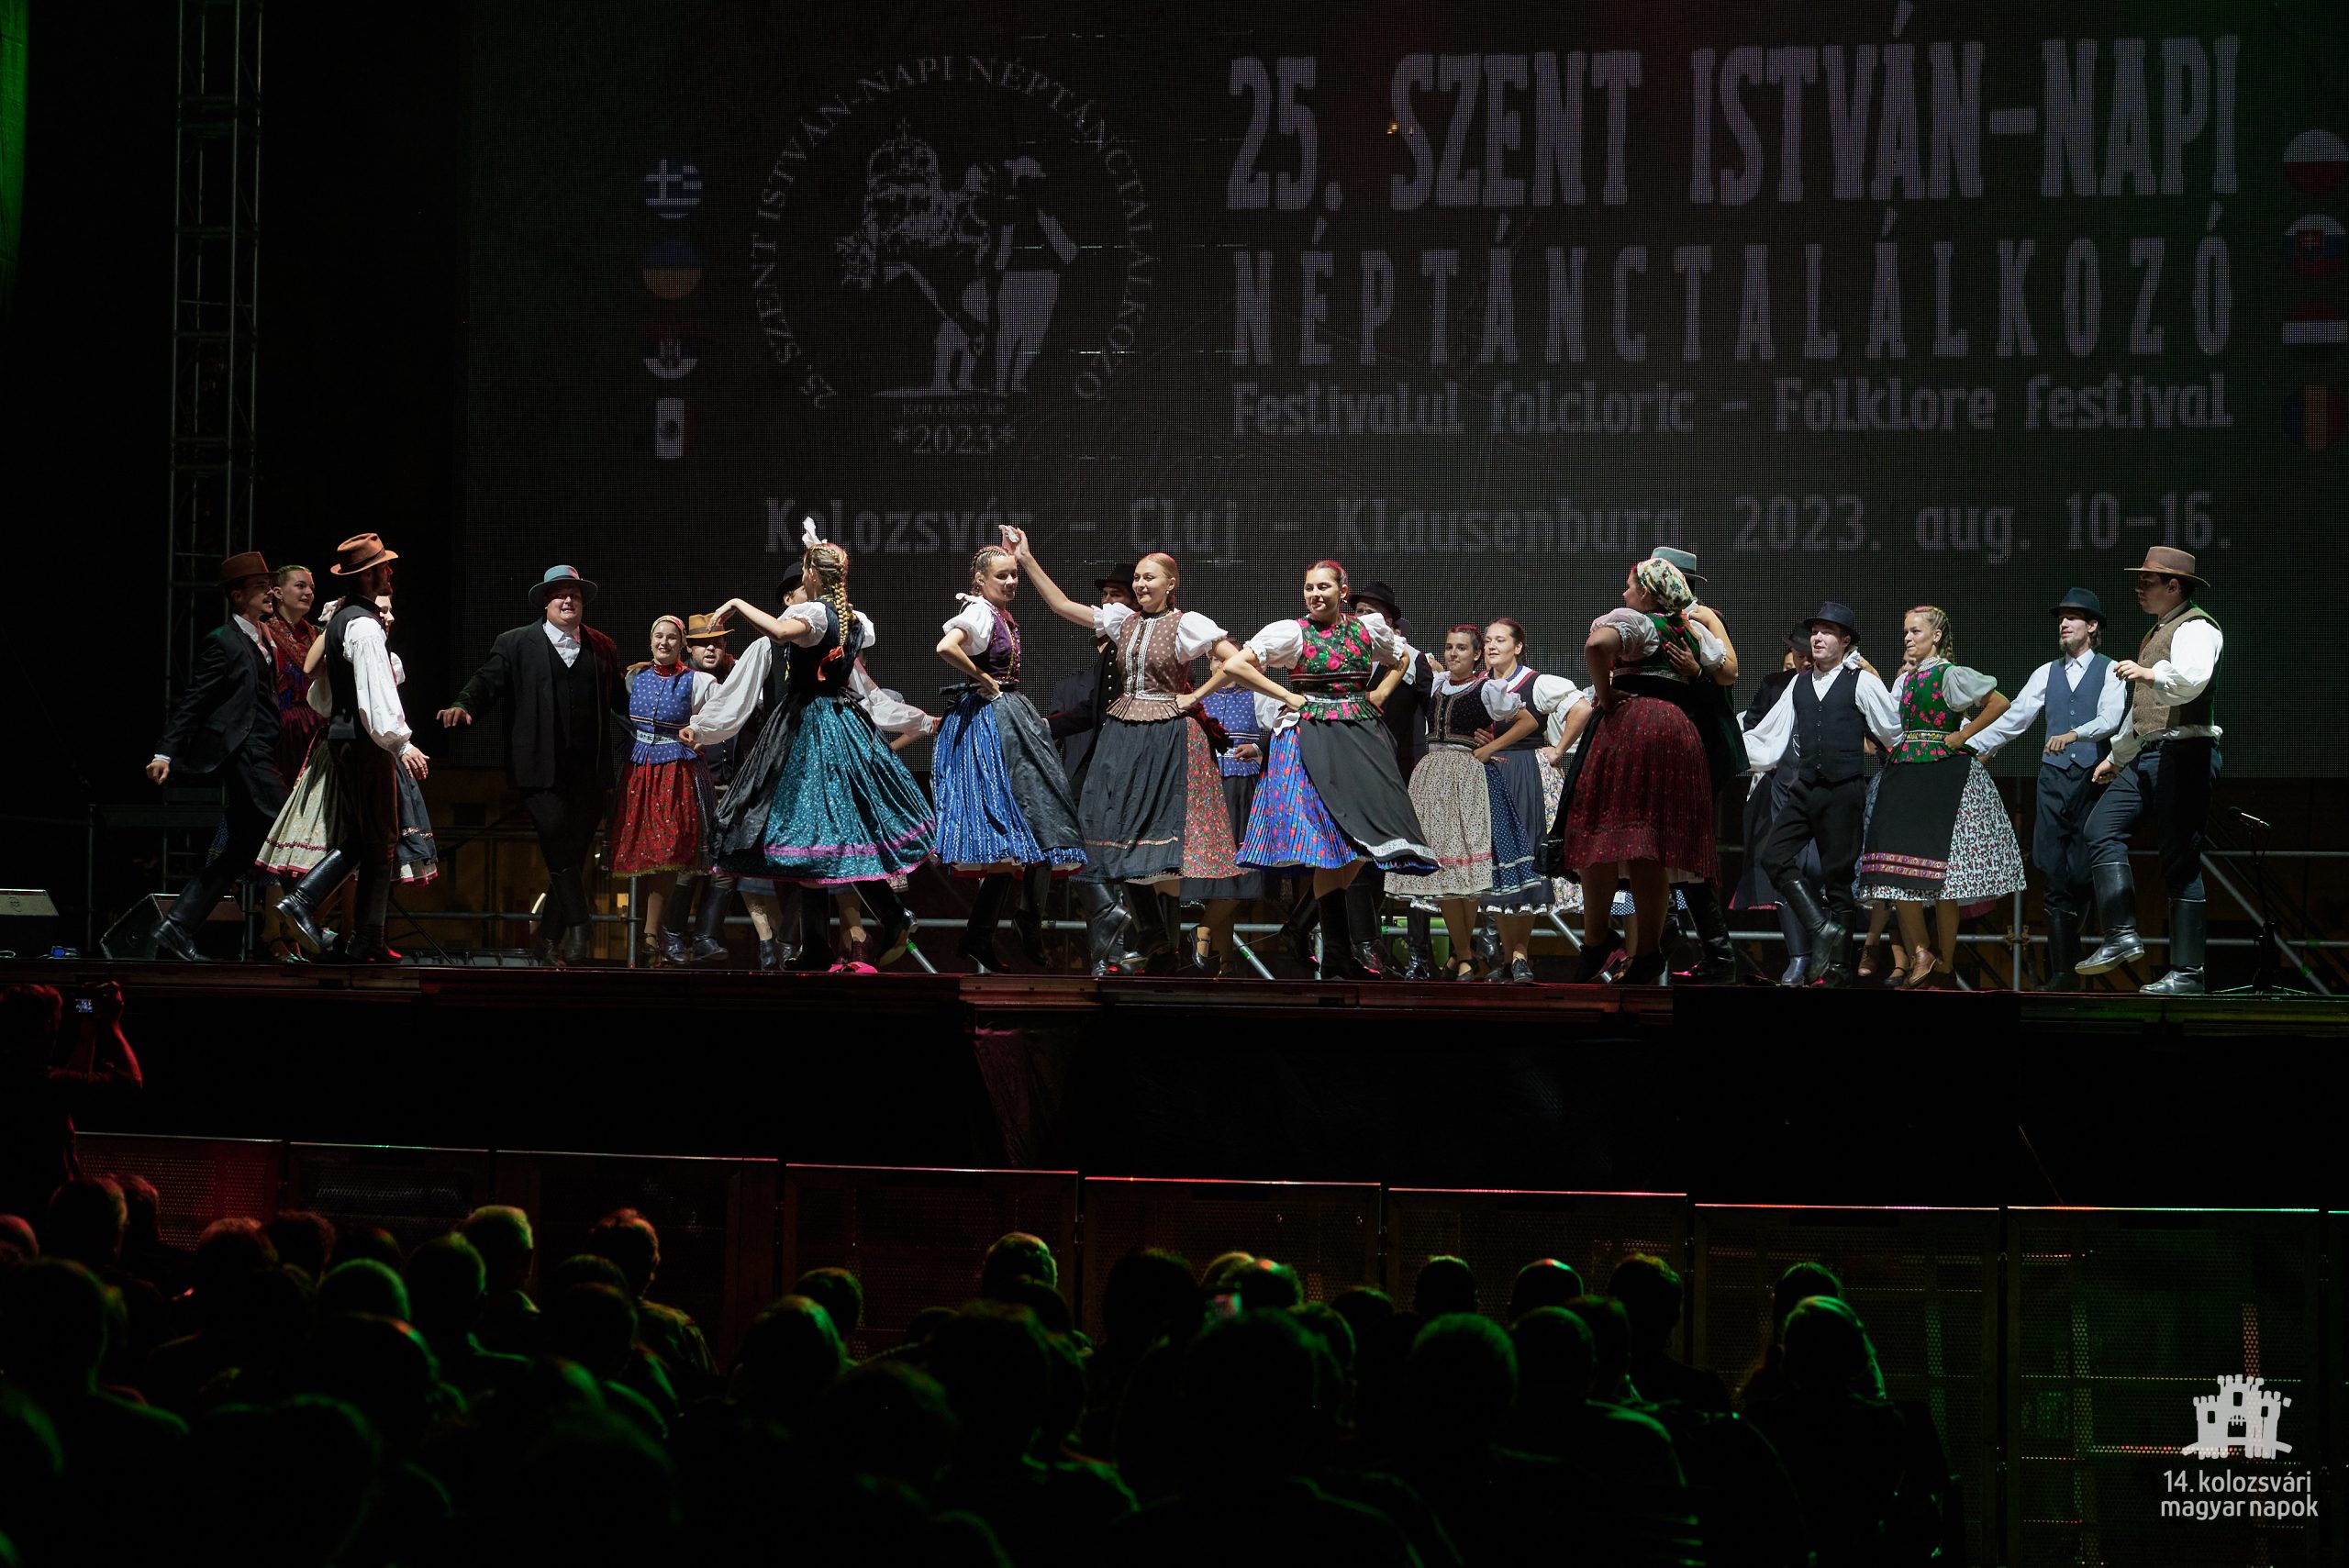 Festivalul Internațional de Folclor „Sfântul Ștefan”, ediția XXV – Gala internaţională de dans popular